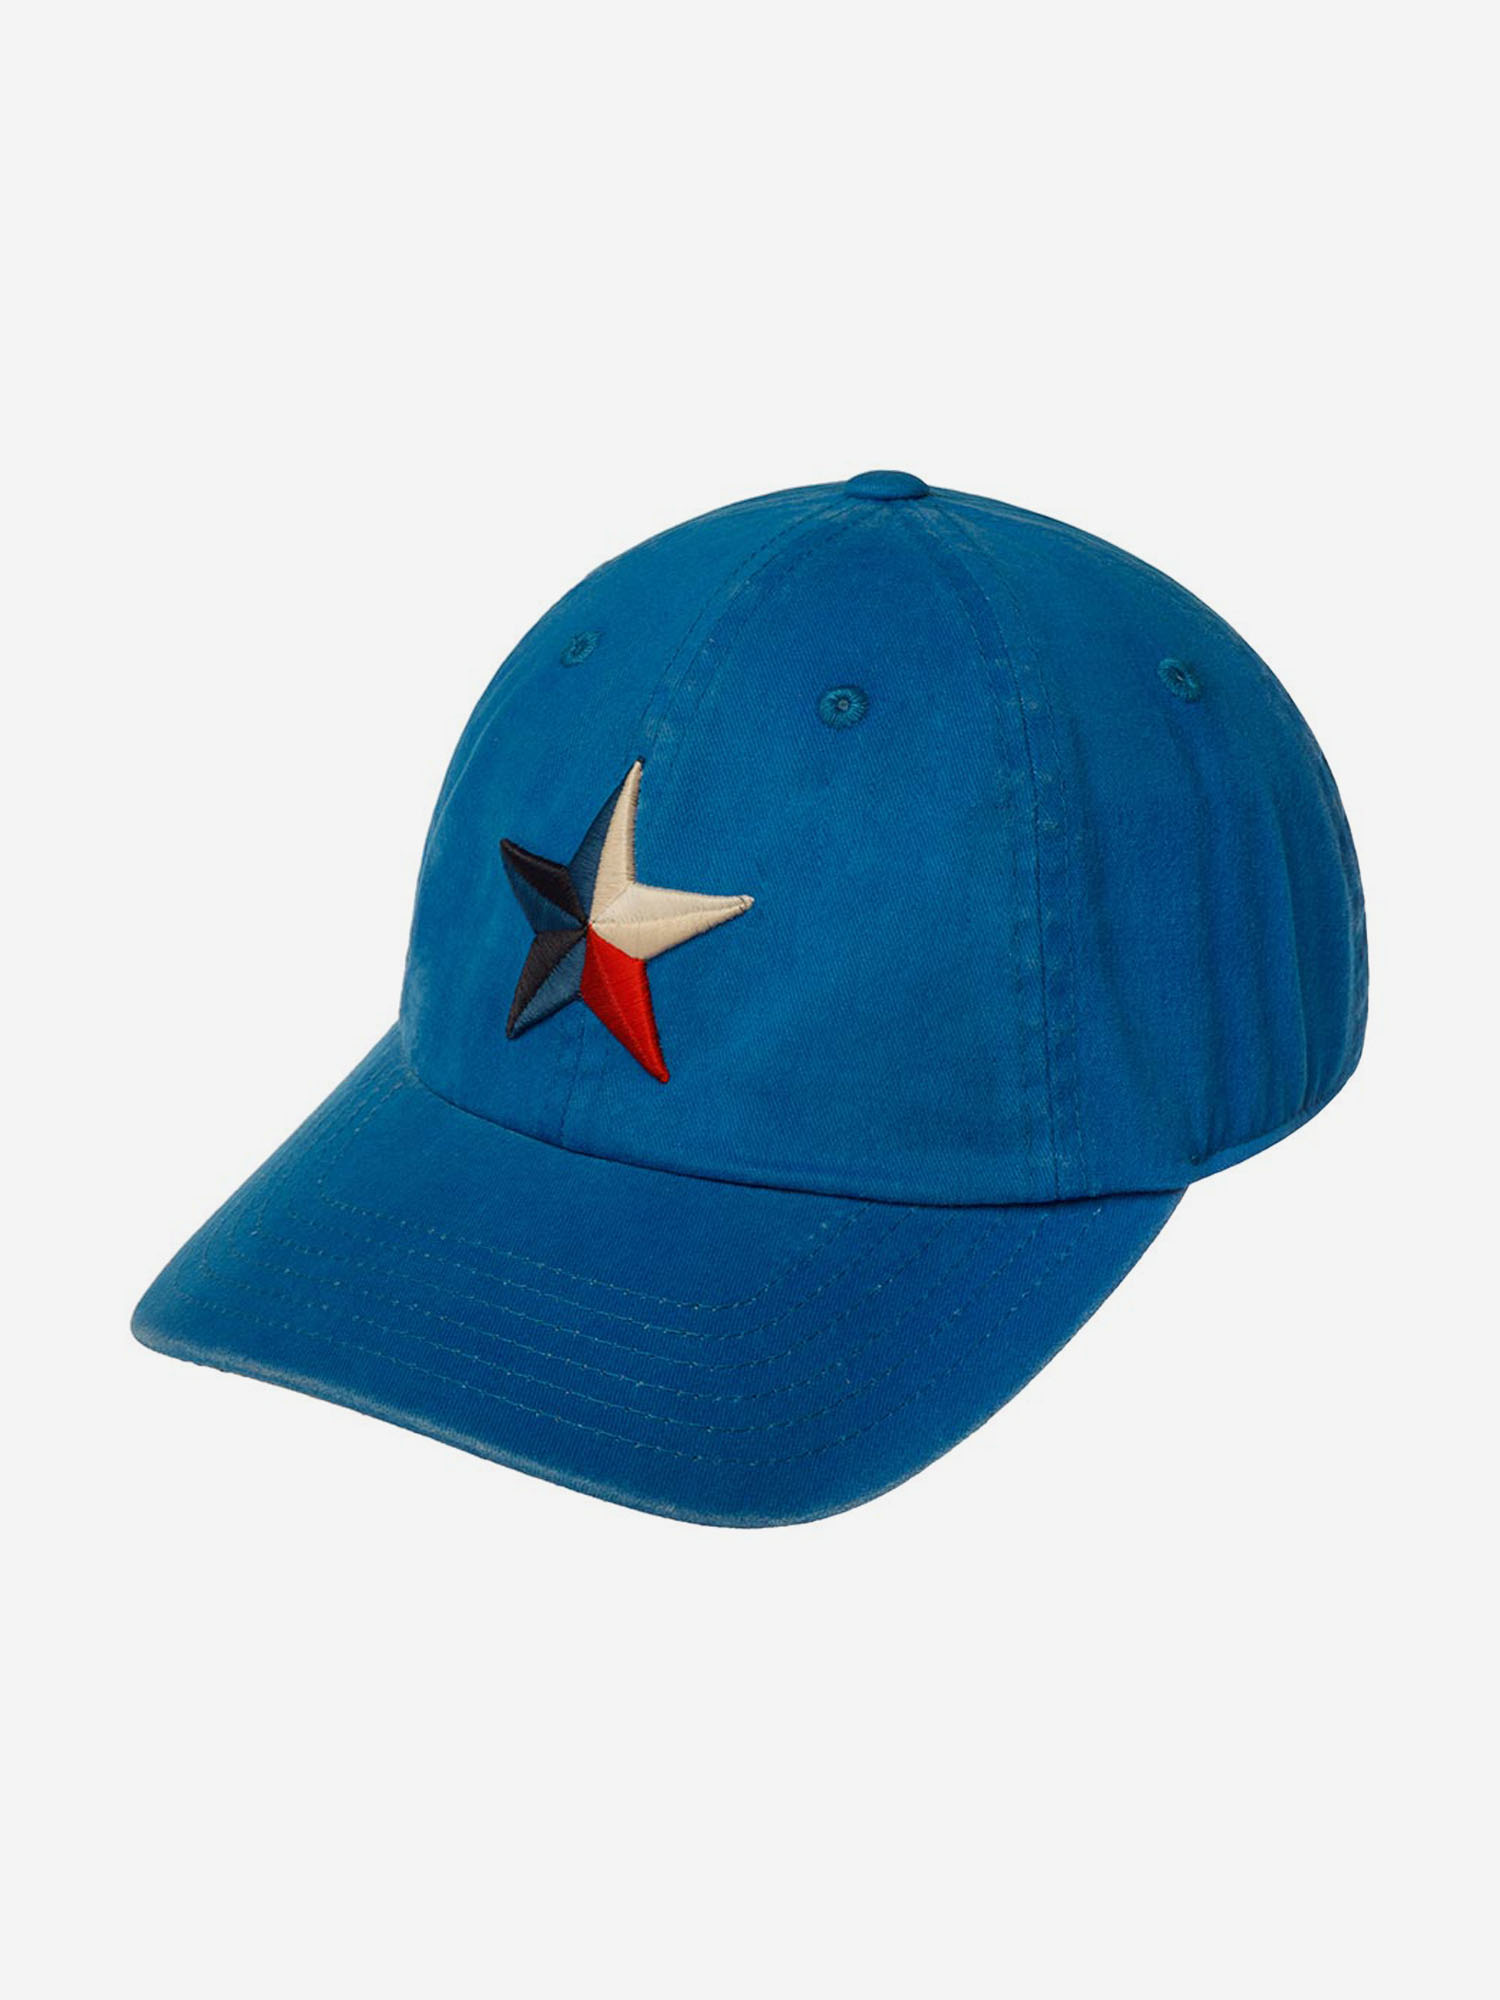 Бейсболка AMERICAN NEEDLE 36670A-TX Texas New Raglan (синий), Синий